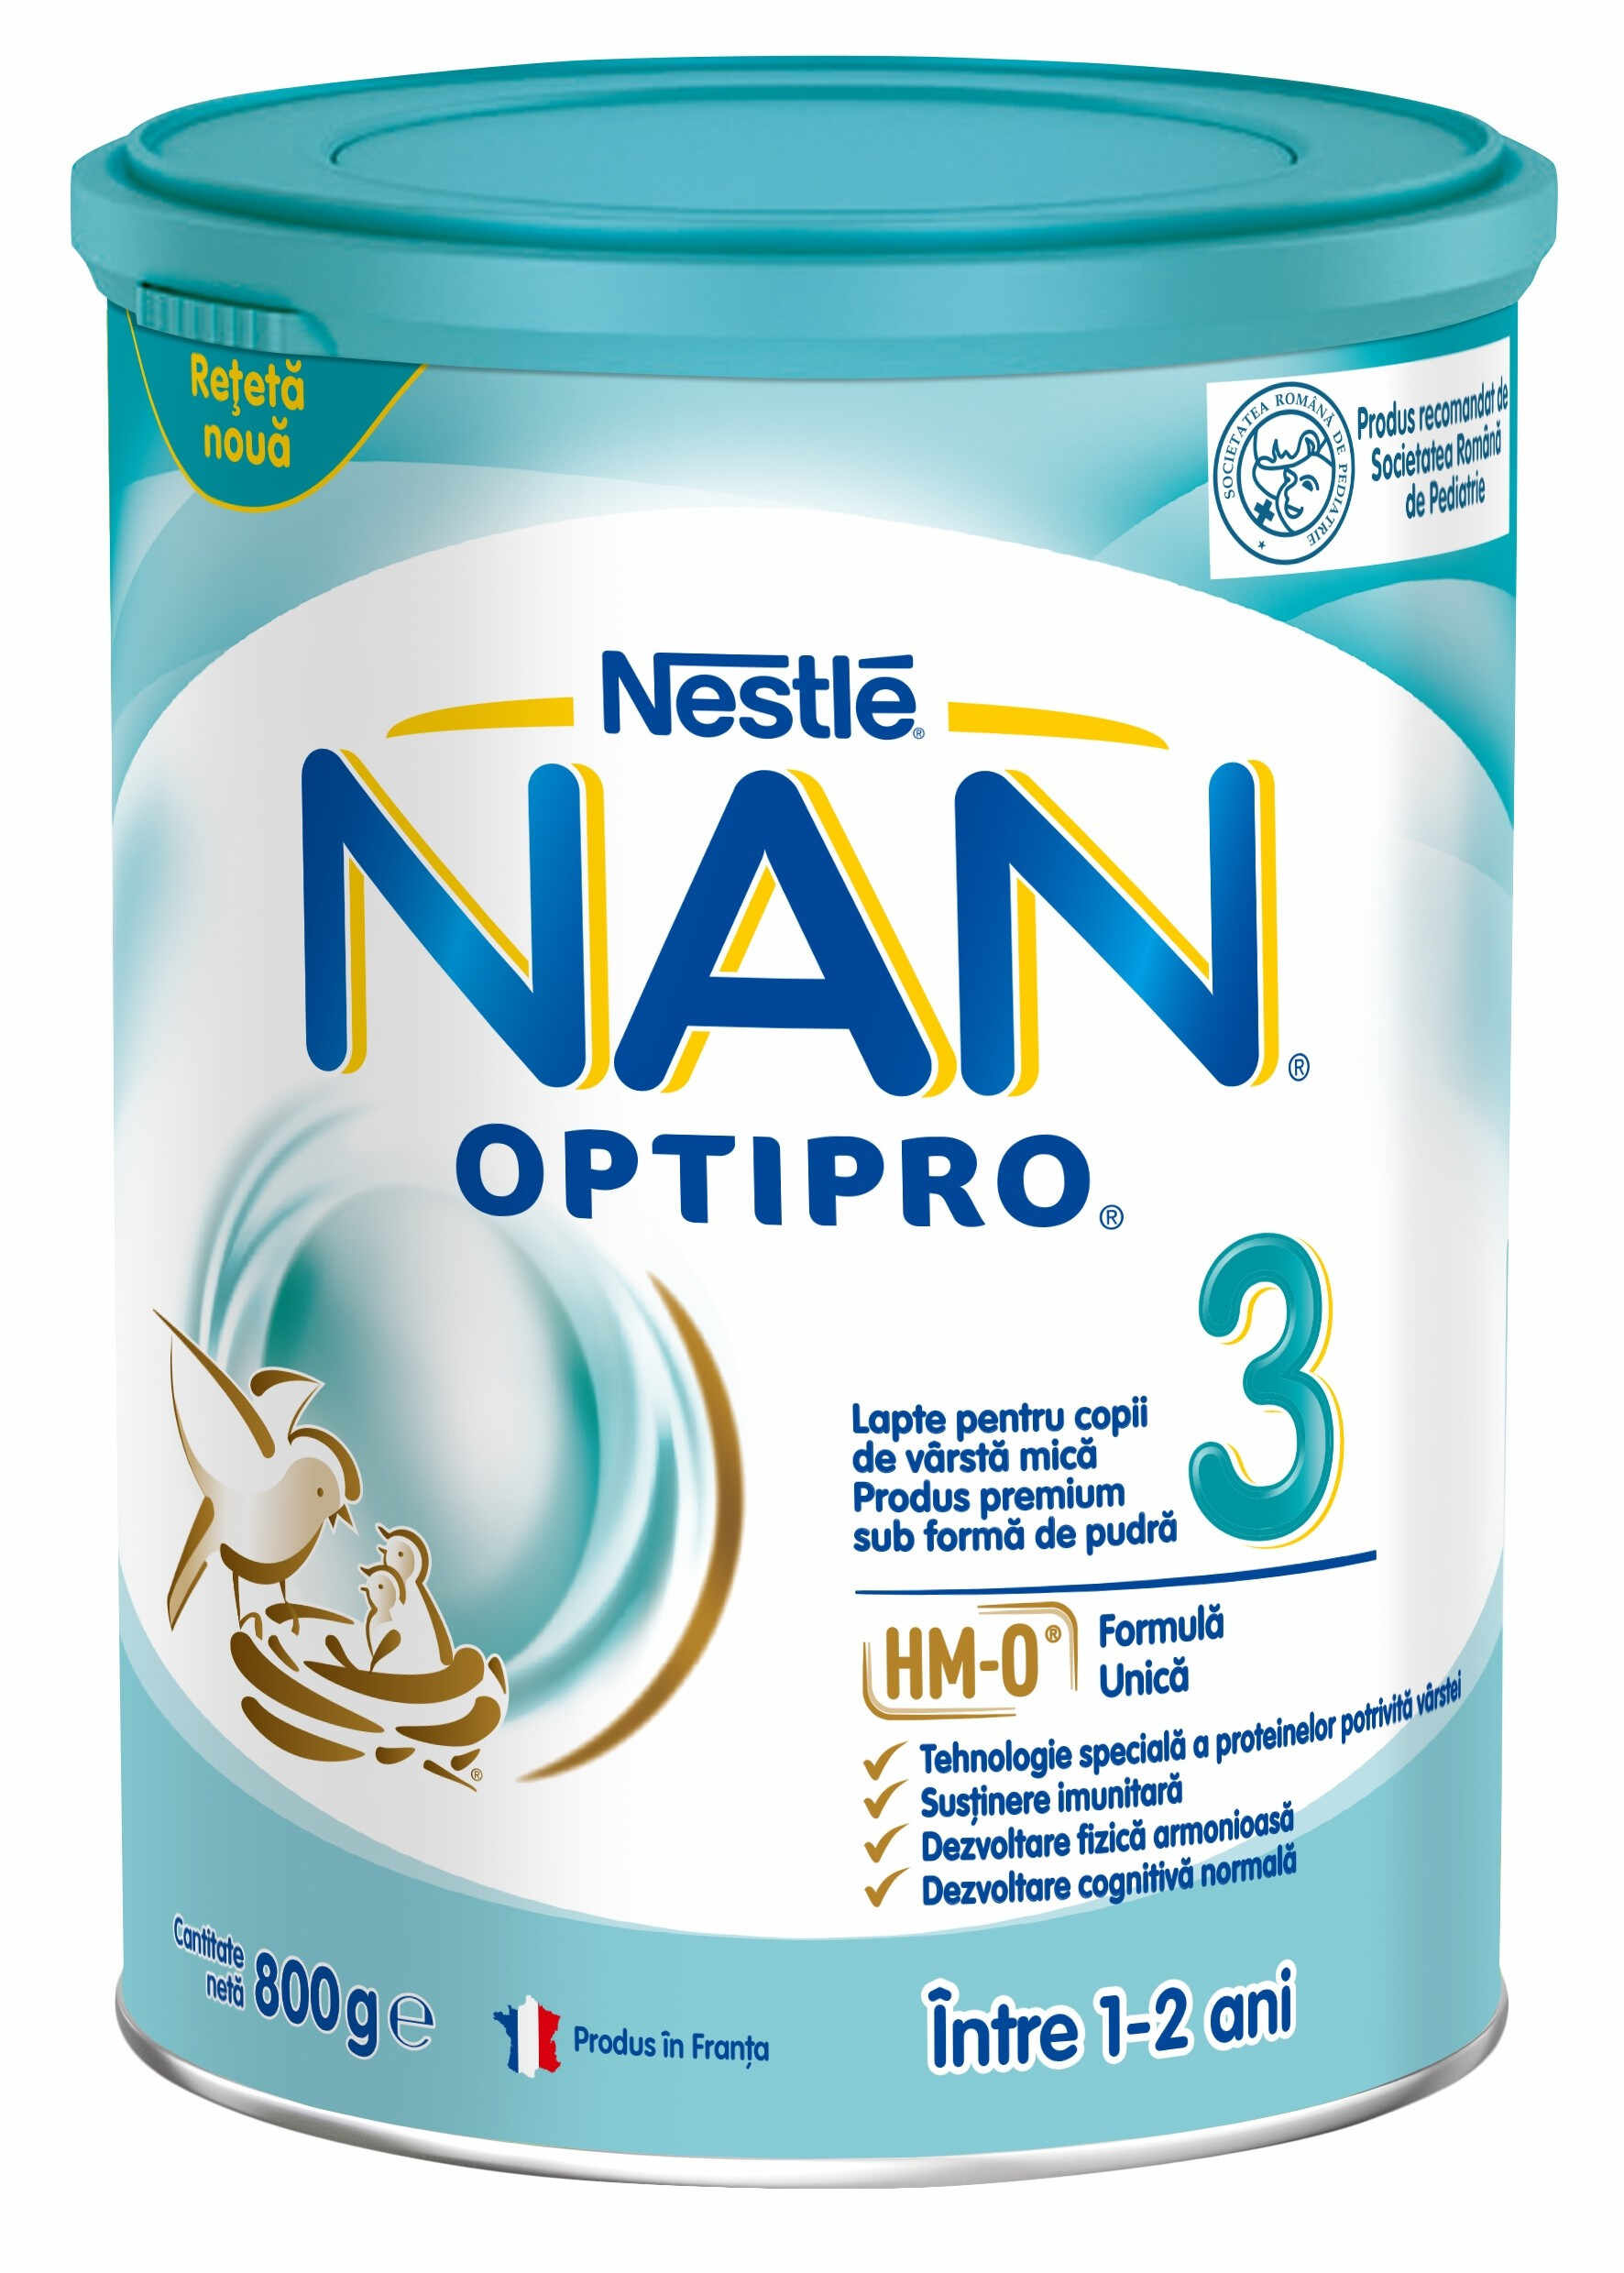 Nestle NAN Optipro 3 lapte praf 800g